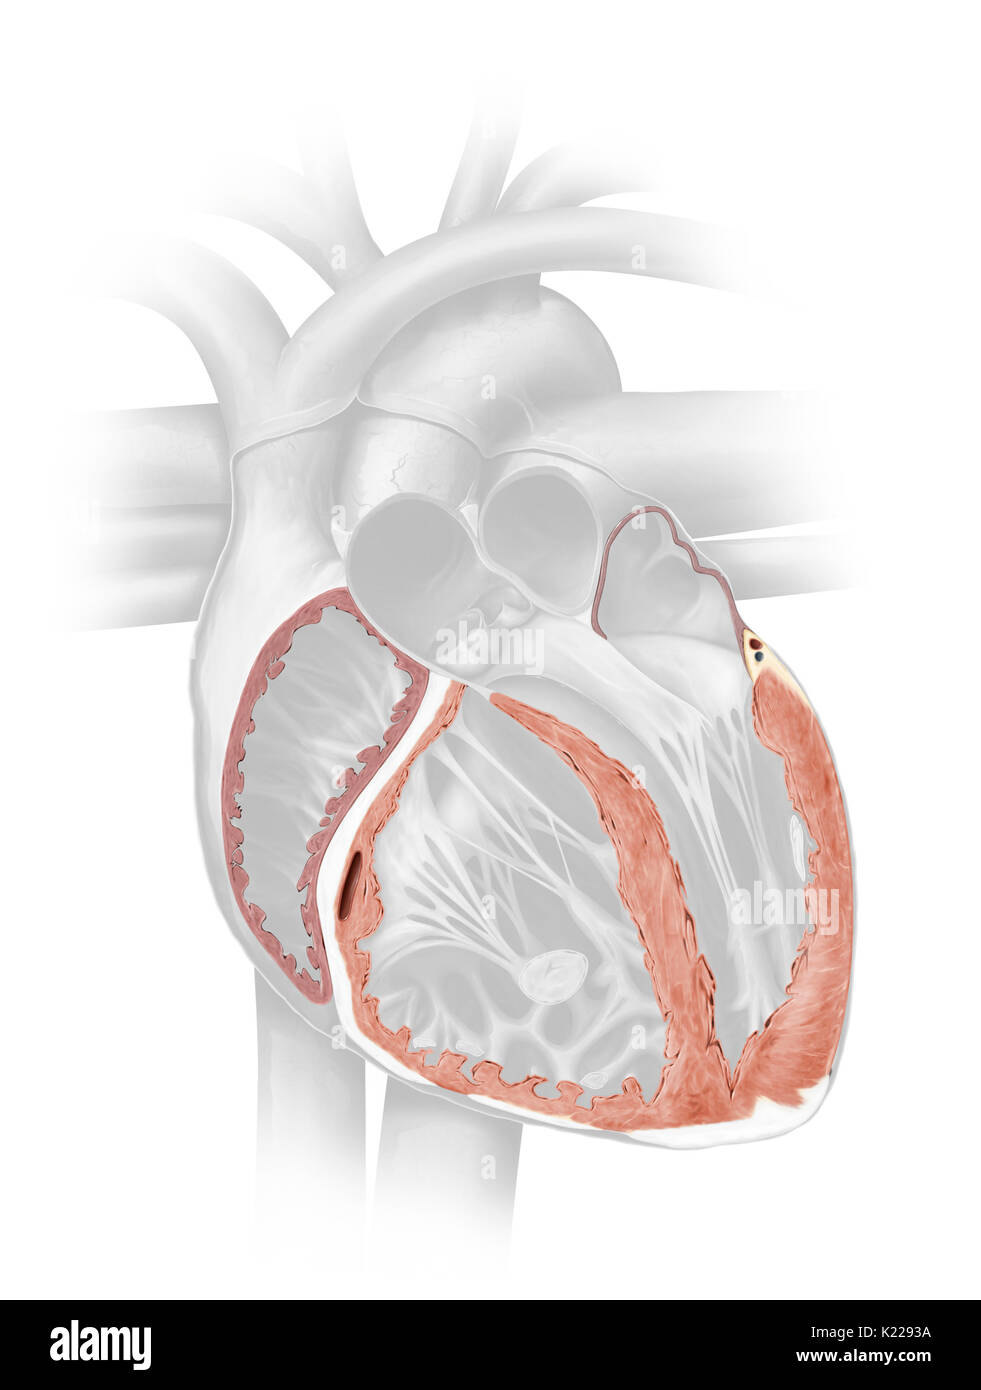 Das myokard besteht aus Muskelfasern, die dickste Schicht der Herzwand. Stockfoto